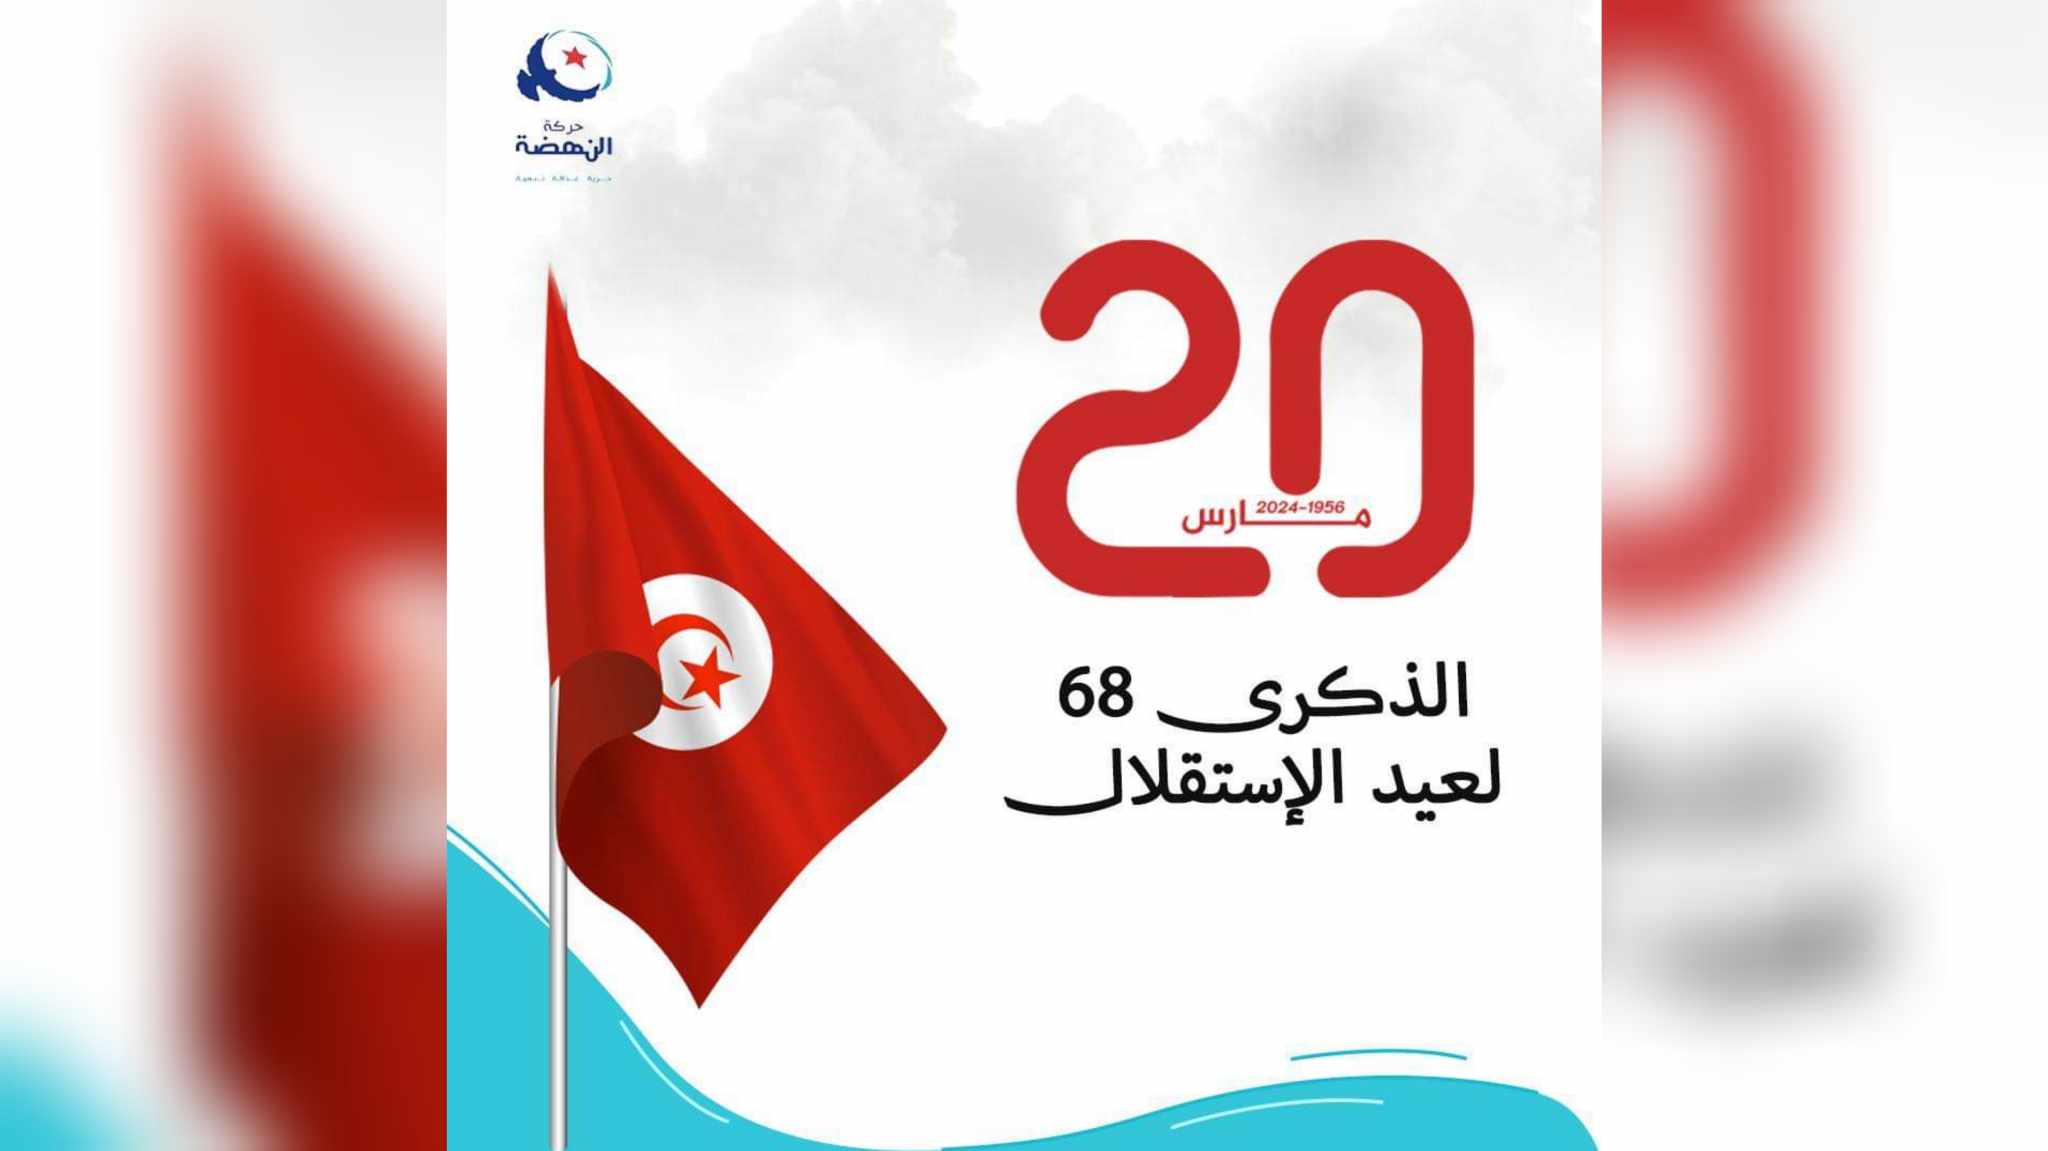 بمناسبة الذكرى 68 لعيد الاستقلال..النهضة تدعو لاحياء الوحدة الوطنية